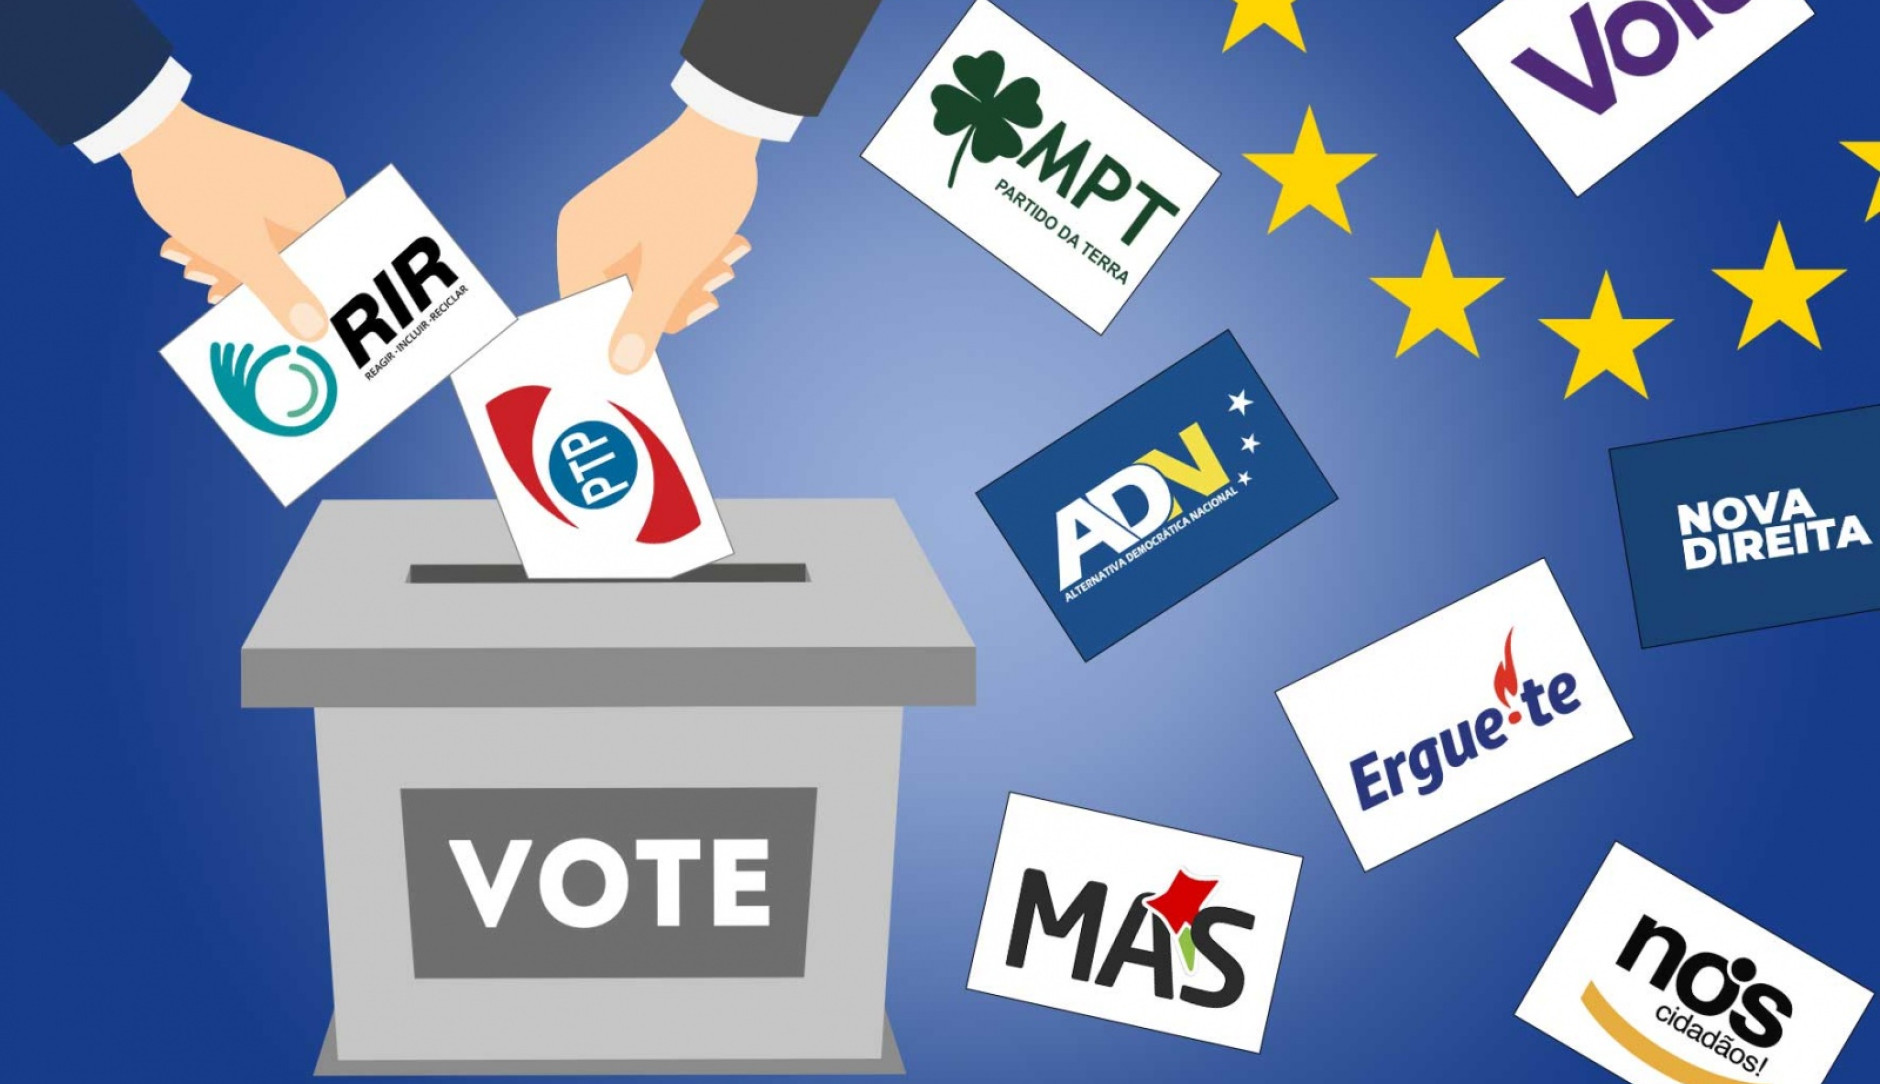 Eleições Europeias - Partidos sem assento parlamentar